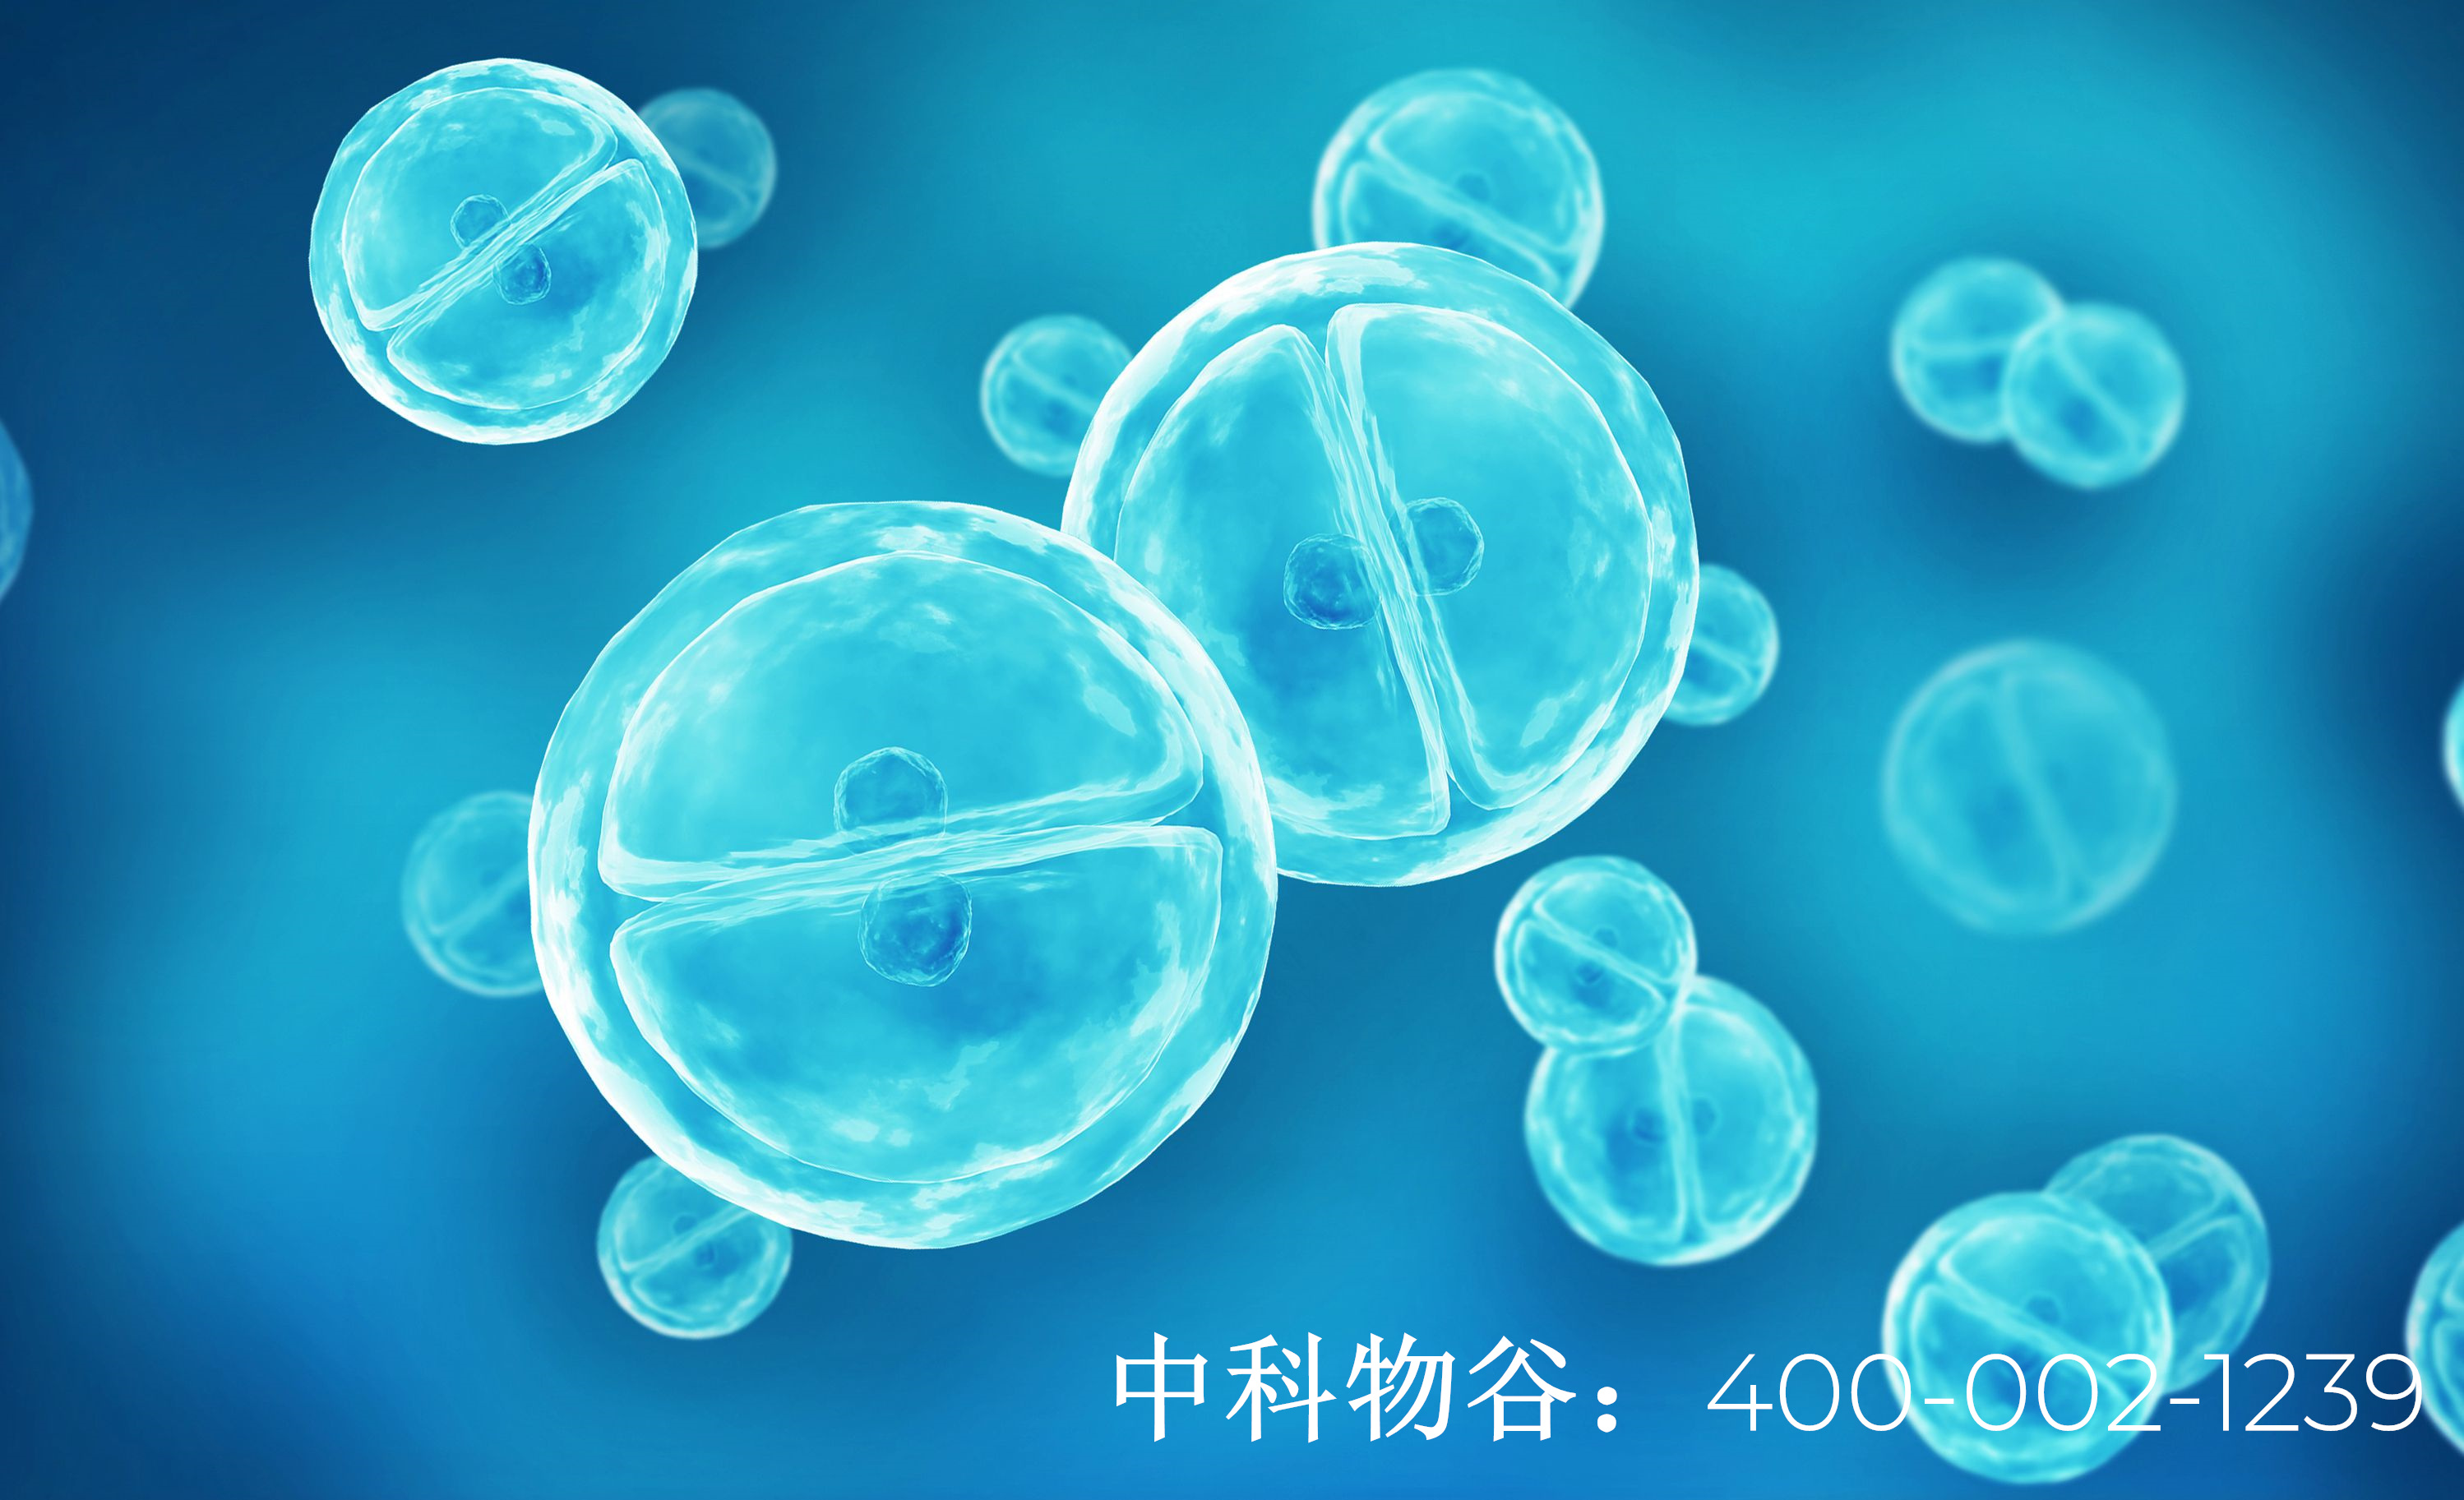 中国干细胞谁最权威